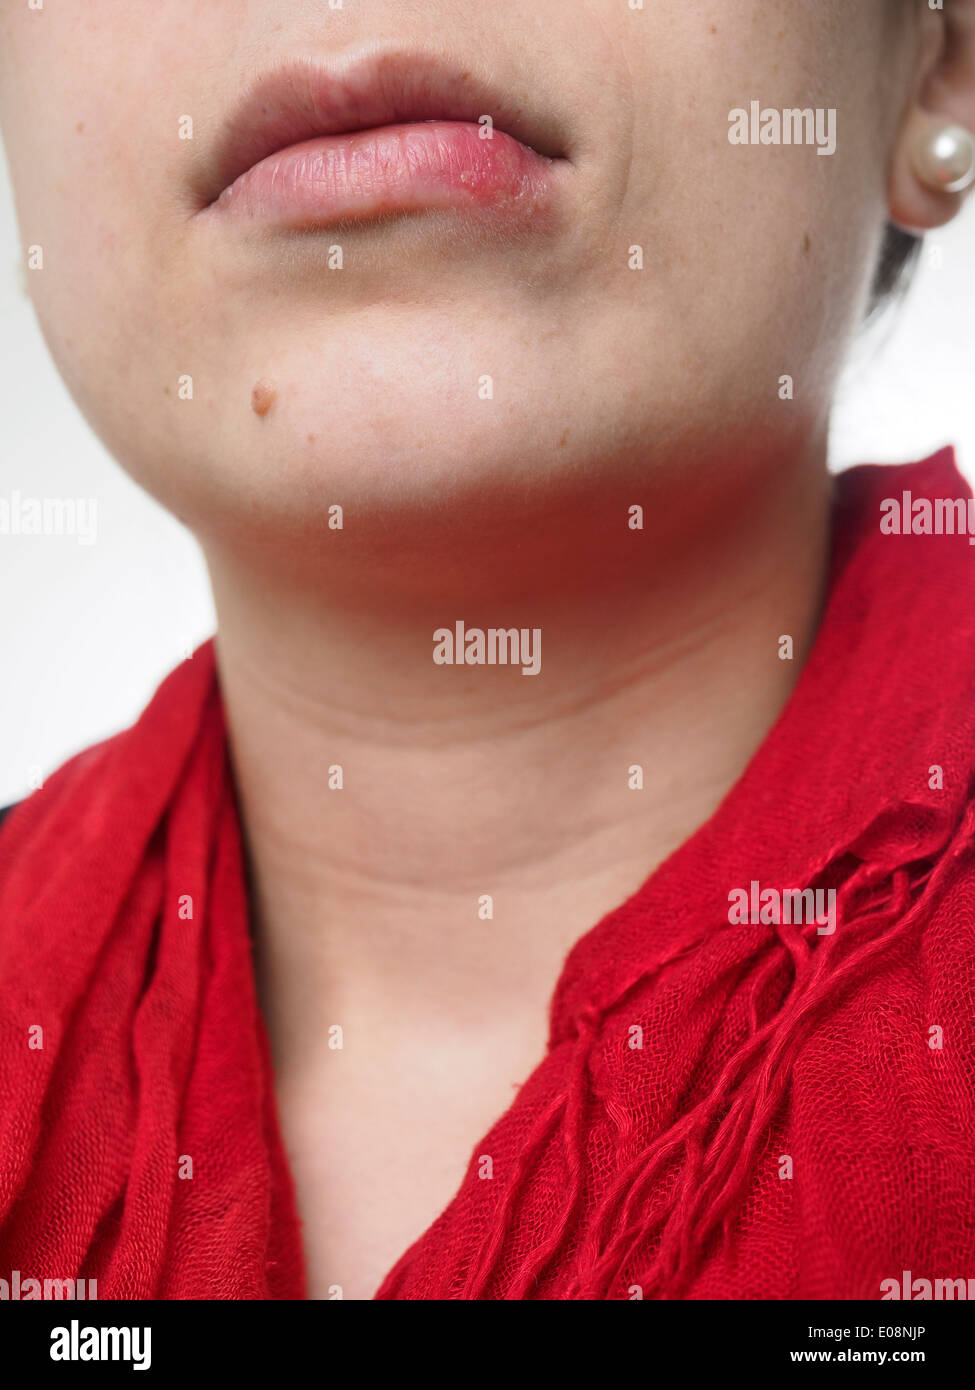 Junge Frau mit Herpes Simplex auf Lippe Stockfoto